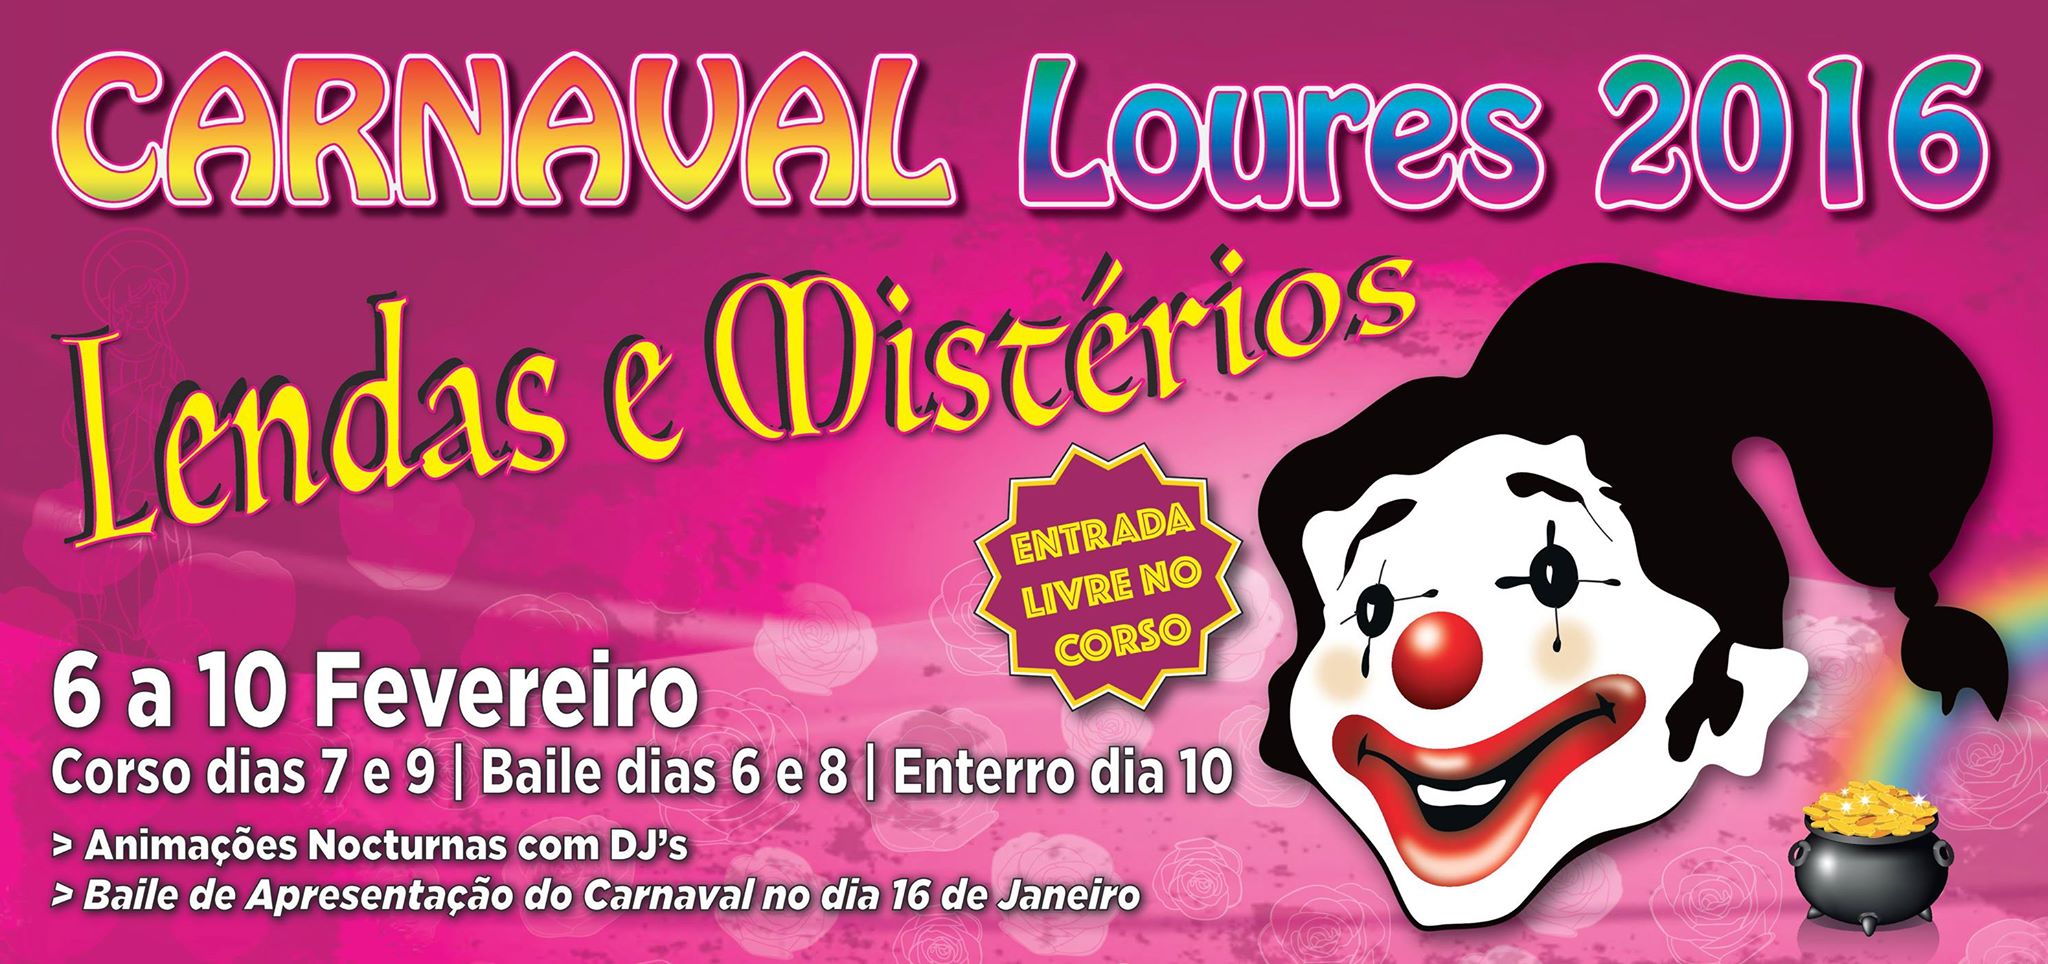 Carnaval de Loures 2016